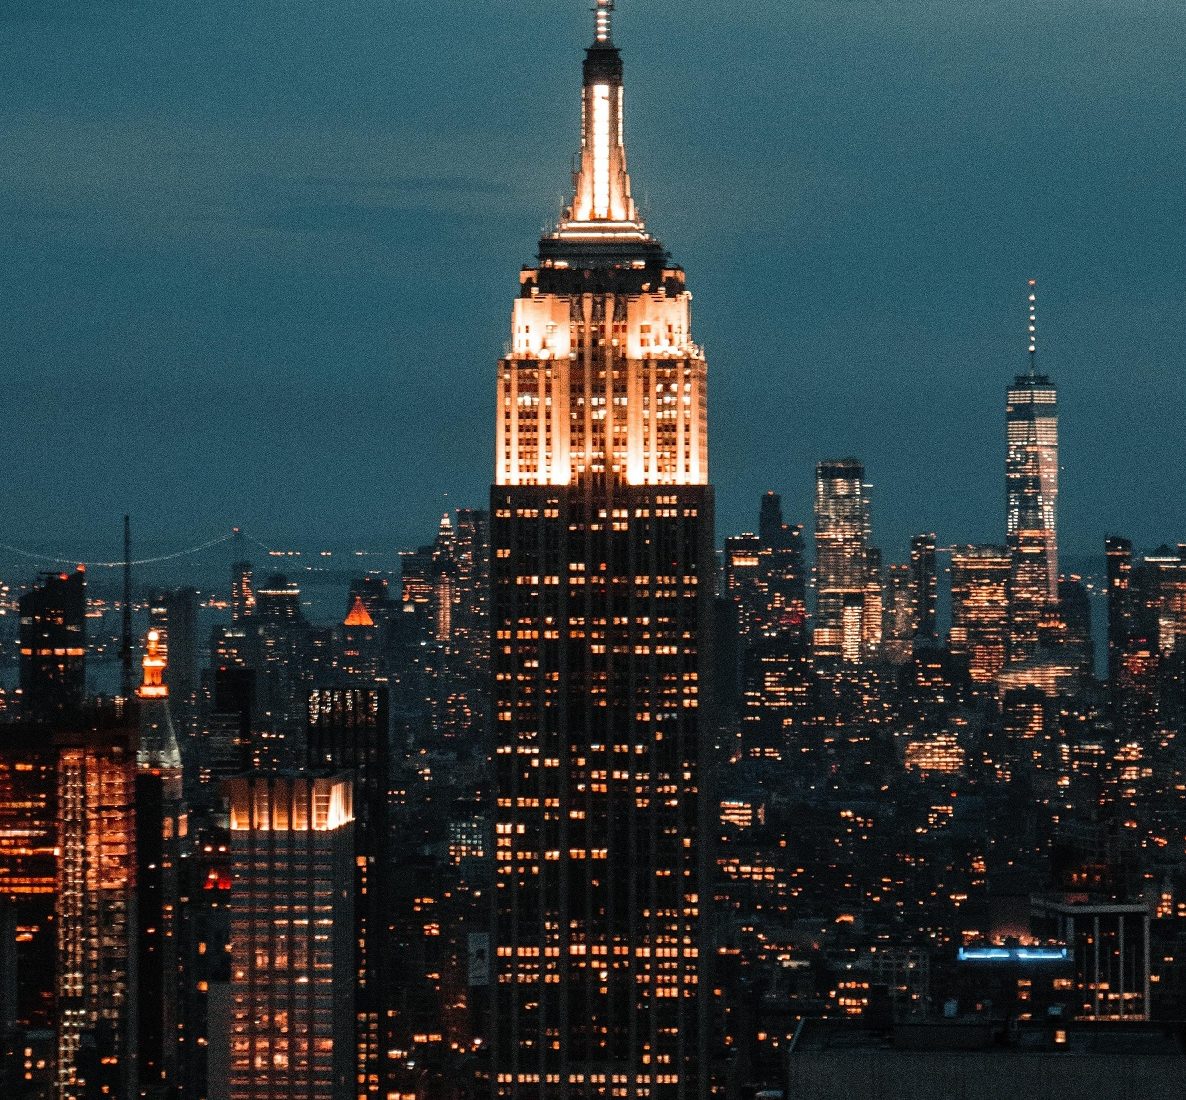 Goldene Tränen verströmte die magische Goldkugel auf dem Empire State Building. Bild: von wirestock auf Freepik